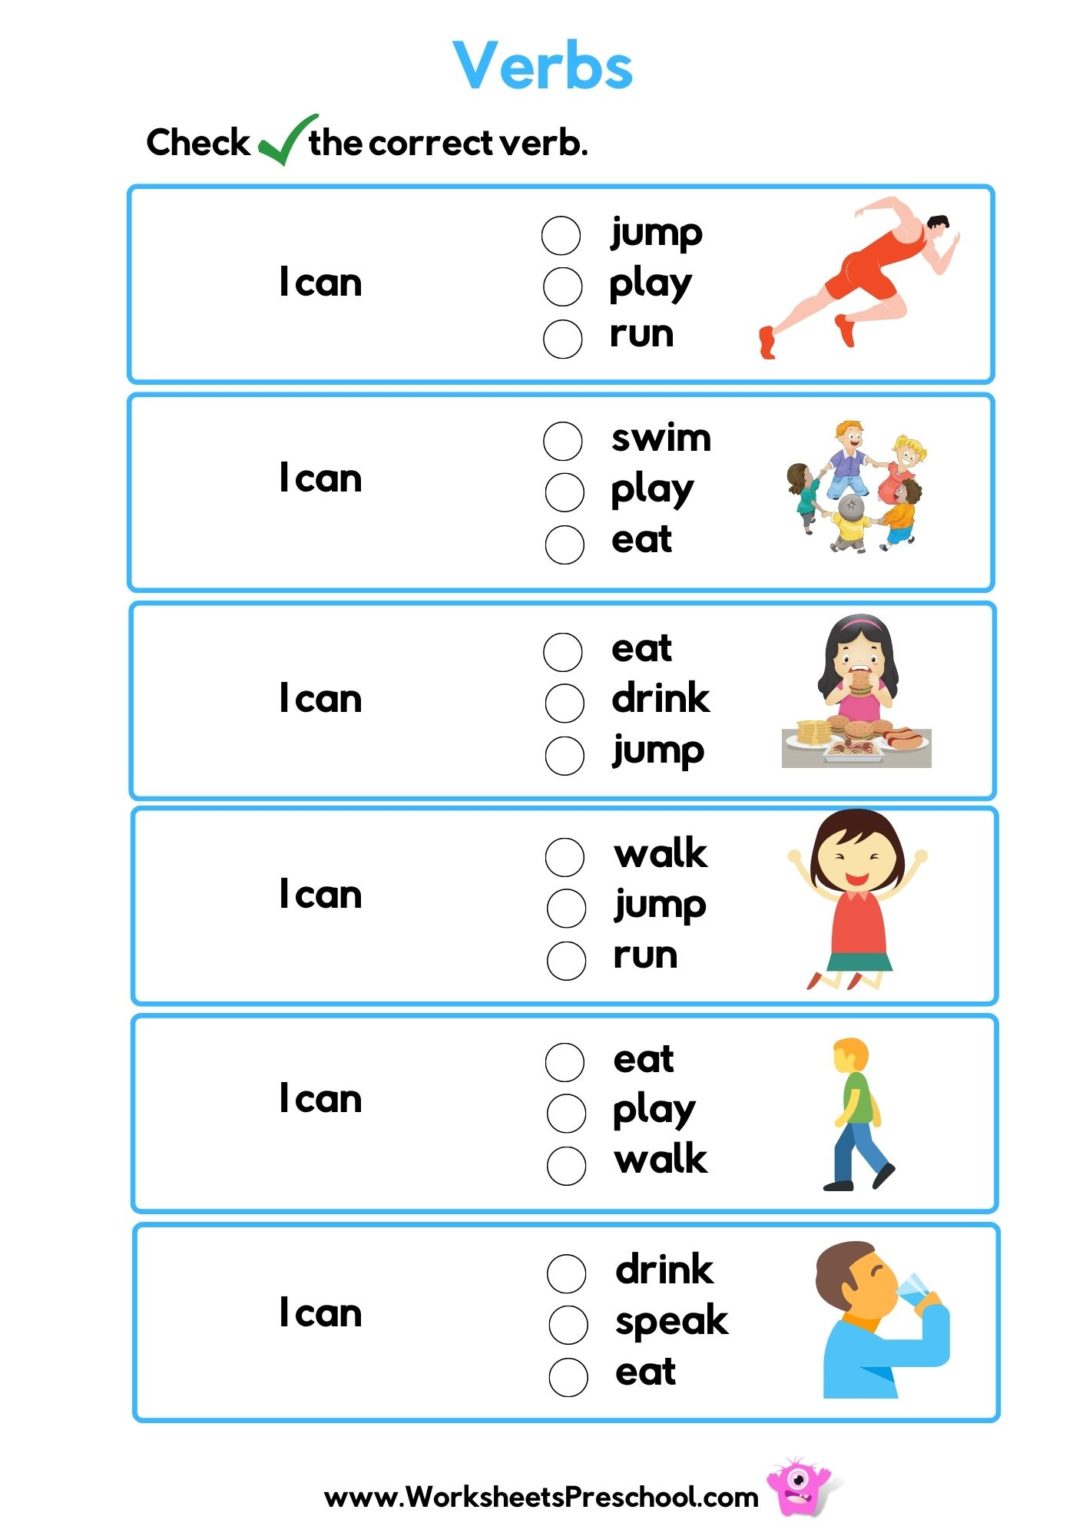 verb-worksheets-preschool-5-free-pdf-printables